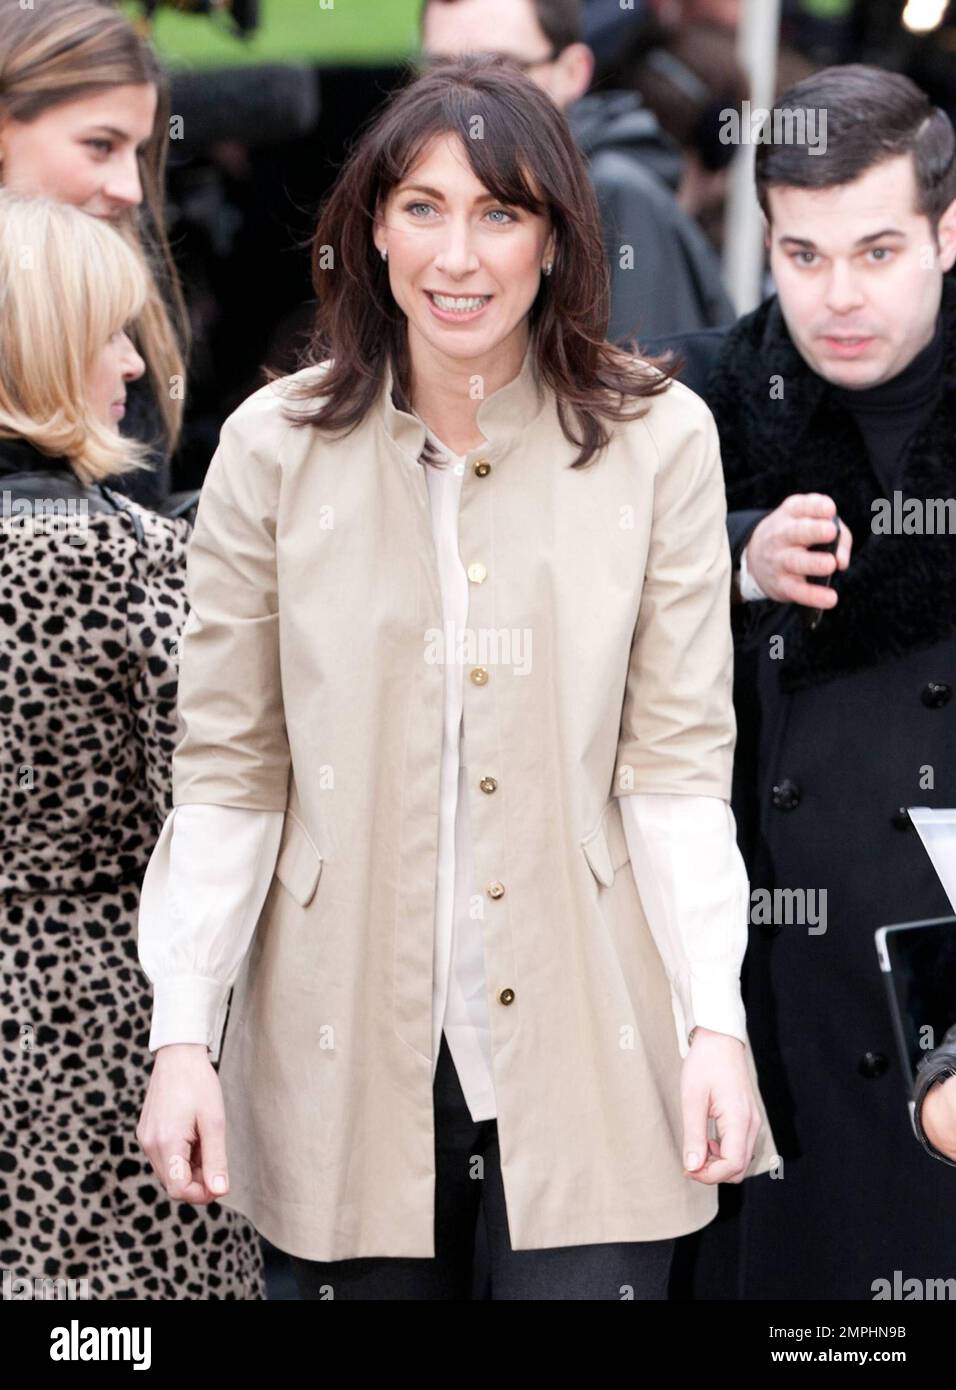 Samantha Cameron posa a Kensington Gardens prima di dirigersi all'interno per la sfilata di moda Burberry Prorsum durante la London Fashion Week. 02/21/11. Foto Stock